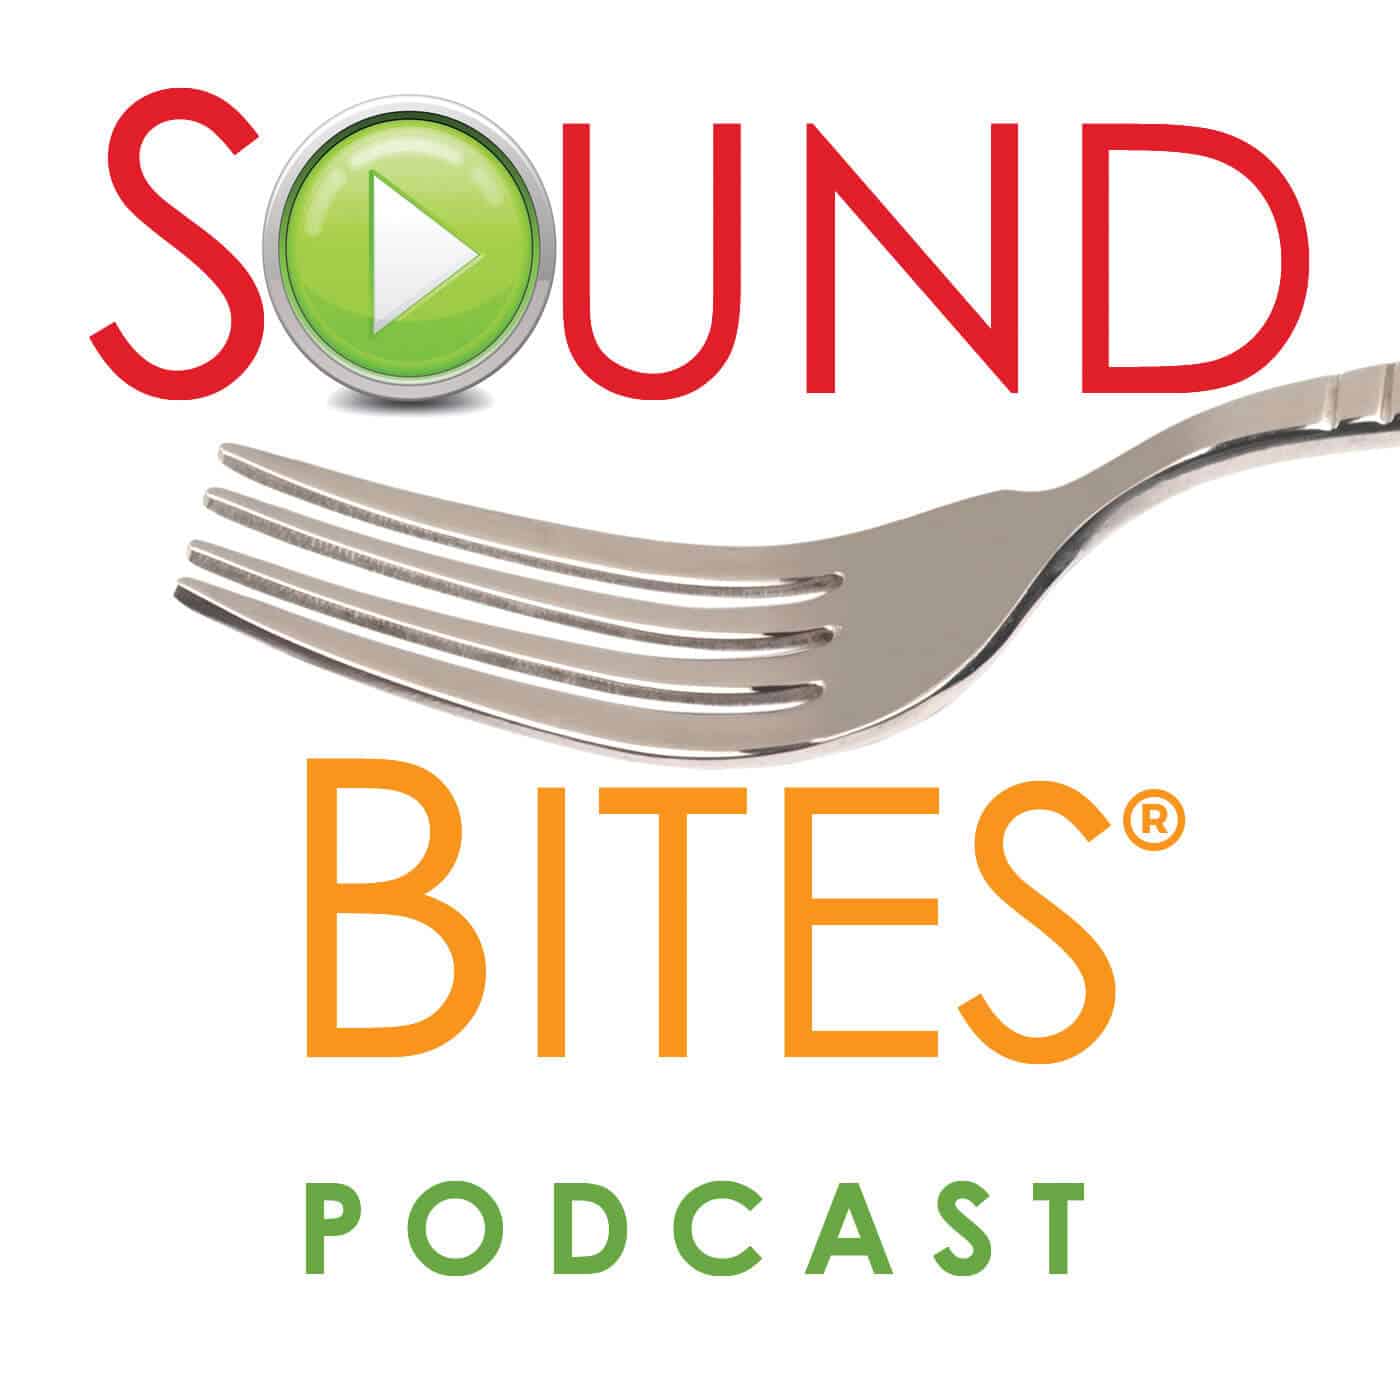 sound-bites-podcast-logo_2017